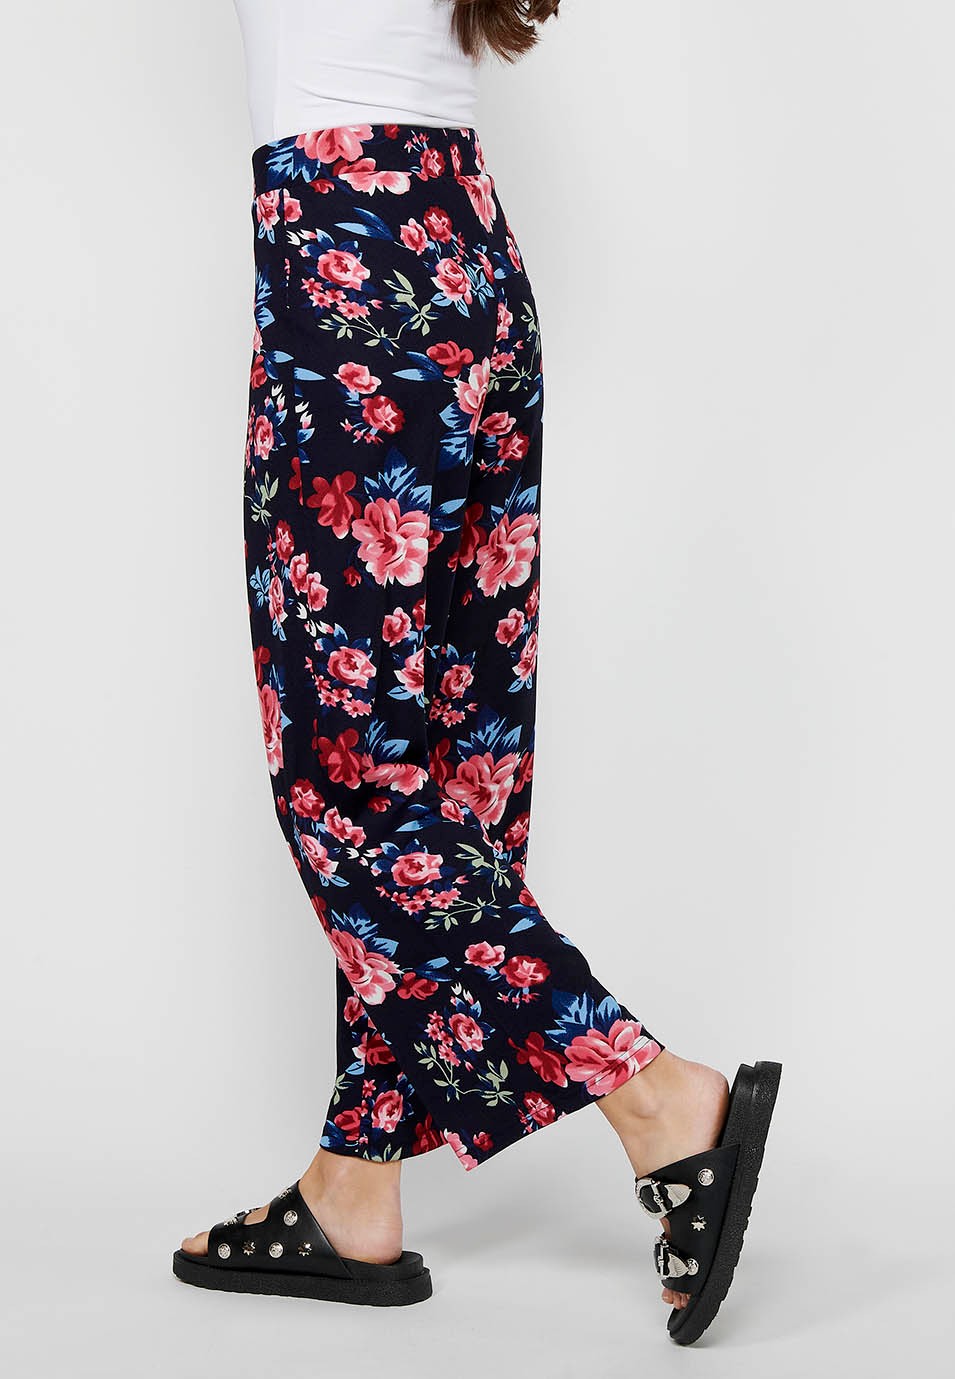 Pantalon long ample avec taille élastique caoutchoutée et imprimé floral Marine pour Femme 7